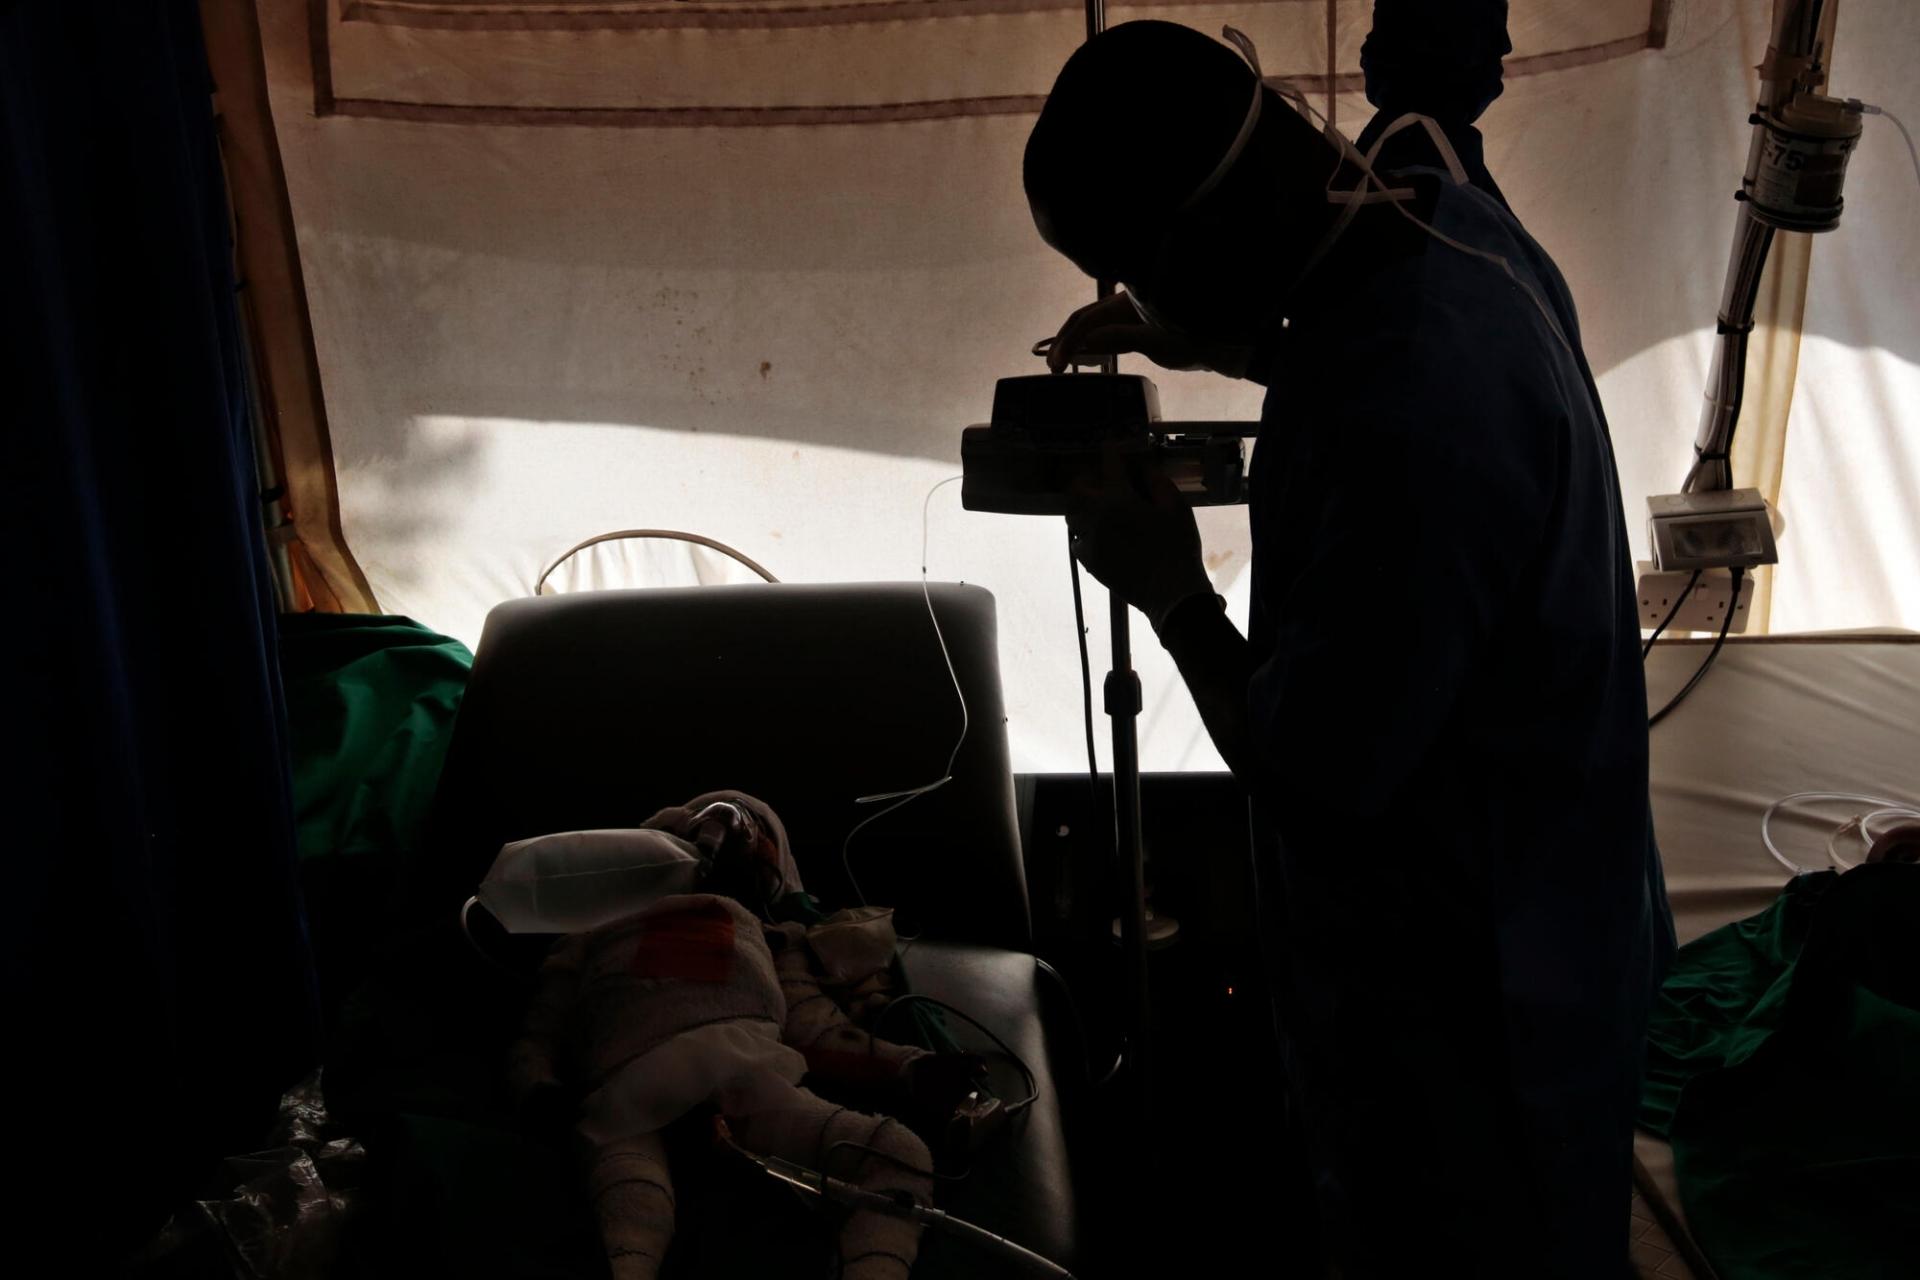 Un bébé souffrant de malnutrition aiguë sévère reçoit des soins au centre intensif nutritionnel thérapeutique de MSF dans la ville de Katsina,  Le centre a été ouvert en septembre 2021. Cinq autres centres nutritionnels thérapeutiques ambulatoires ont ouvert en même temps - l’un dans la ville même de Katsina et les quatre autres dans la localité de Jibia, à la frontière avec le Niger. Ces dernières semaines, la capacité d’hospitalisation a dû être augmentée, passant de 100 à 280 lits, pour faire face à l’af